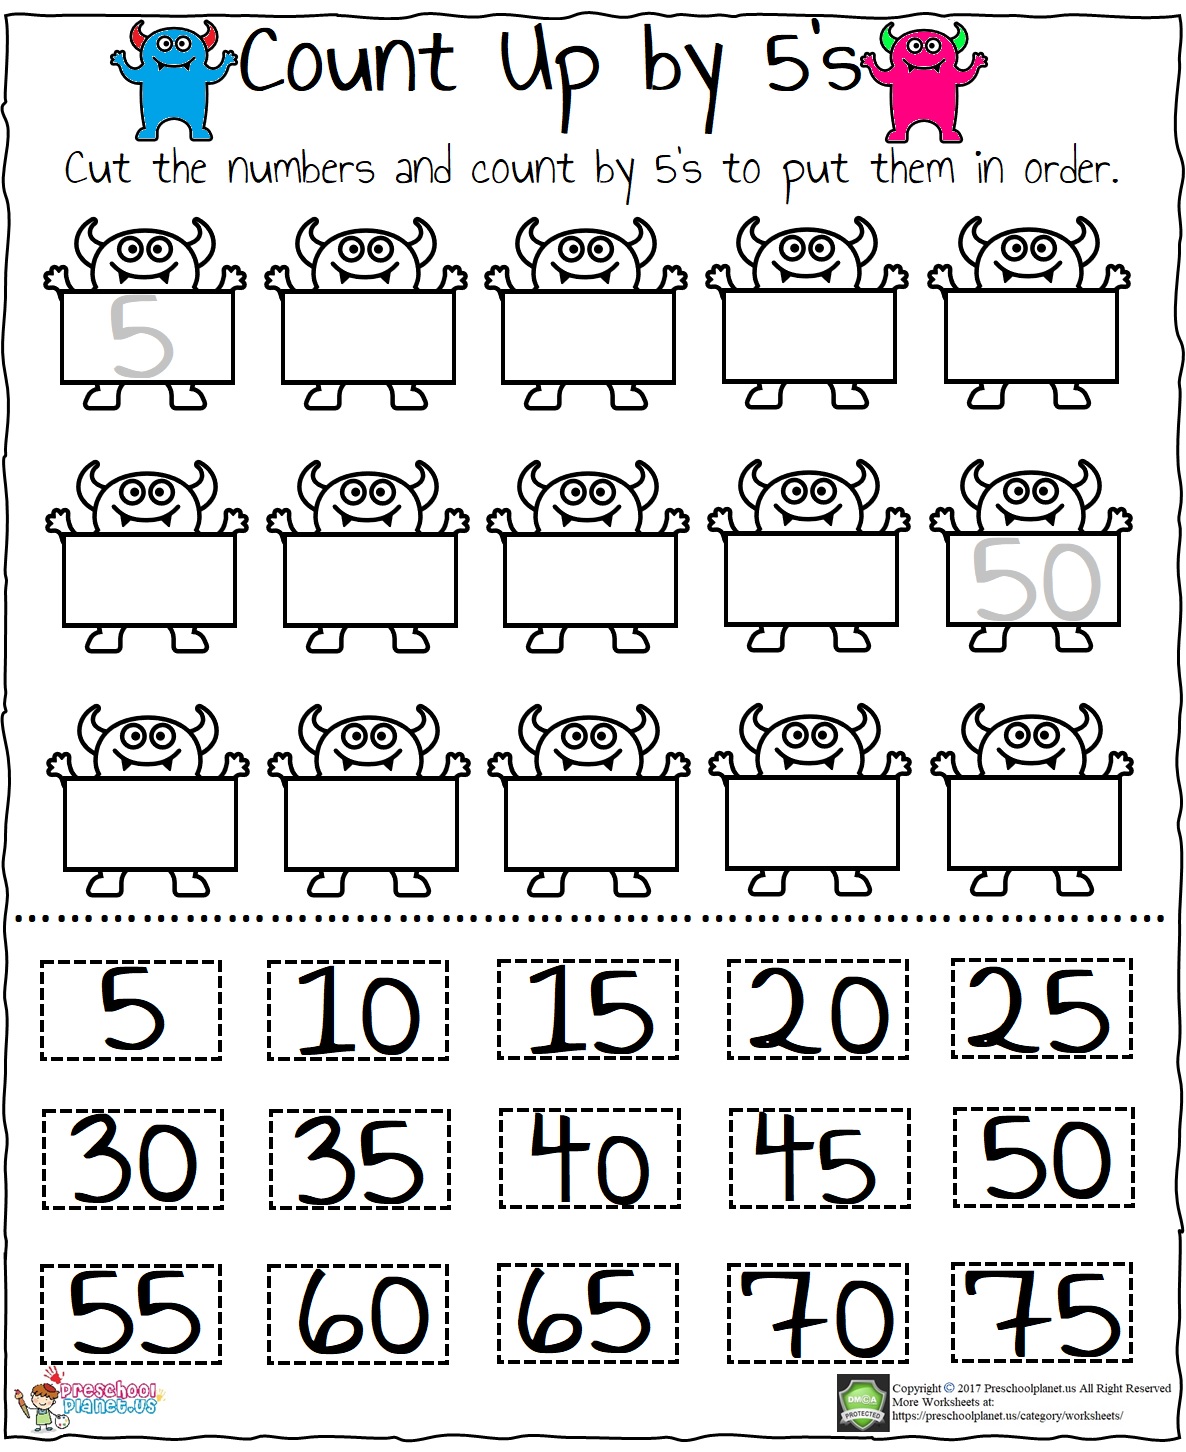 skip-counting-by-5-s-worksheet-pdf-preschoolplanet